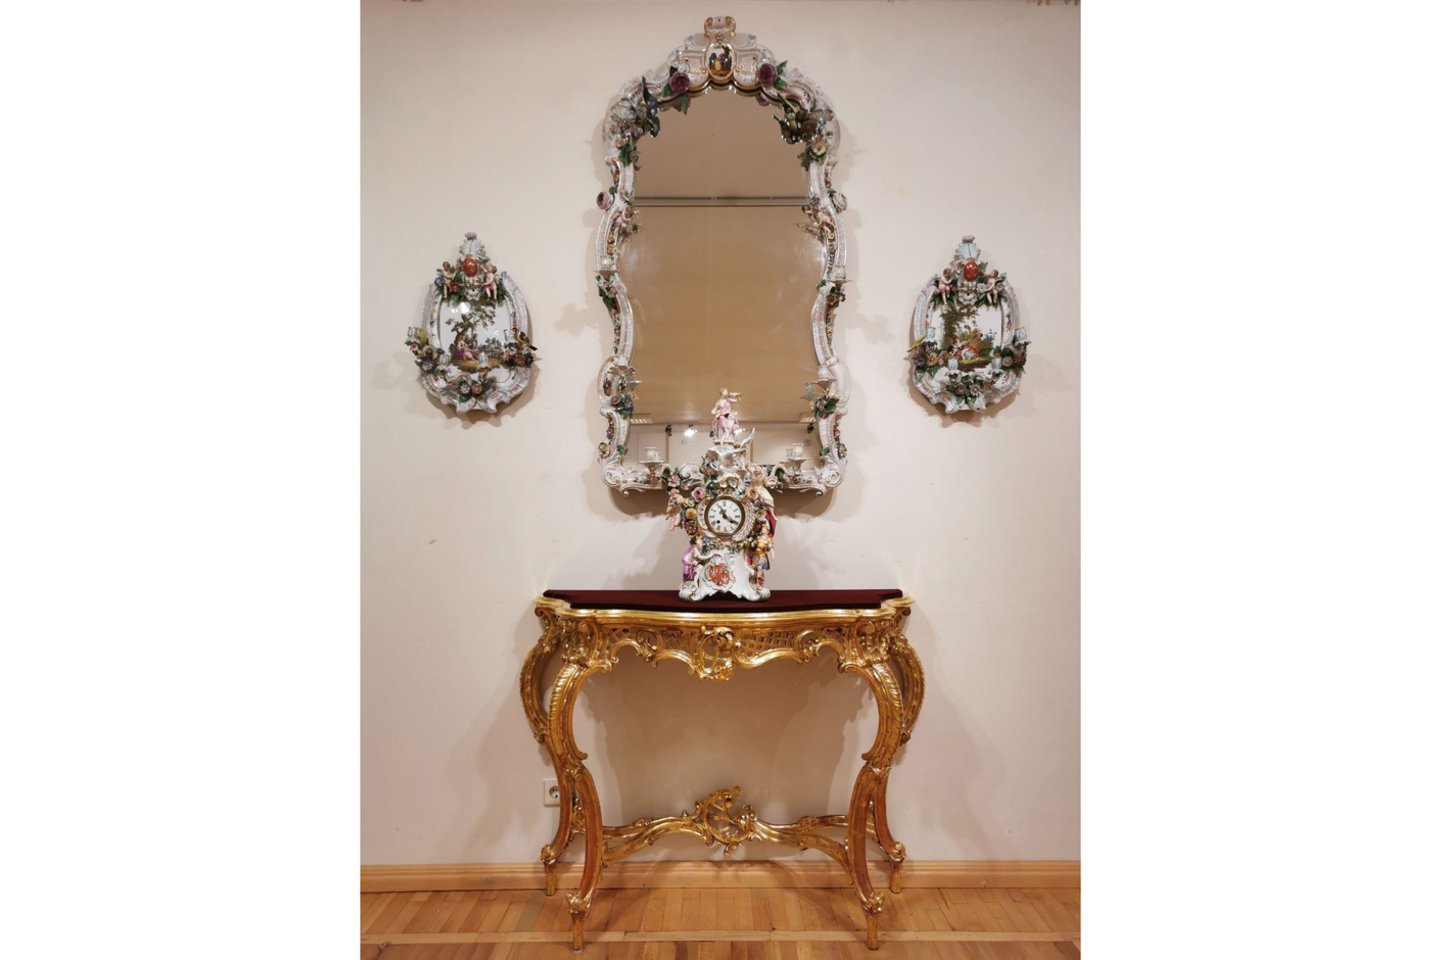 Greta porceliano dirbinių eksponuojami LNDM grafikos ir tapybos XVII–XIX a. kūriniai bei manieringi baldų komplektai paryškina dailės epochų bendrą vaizdą.<br>Laikrodžių muziejaus (E. Rumbutytės-Šimienės) nuotr.